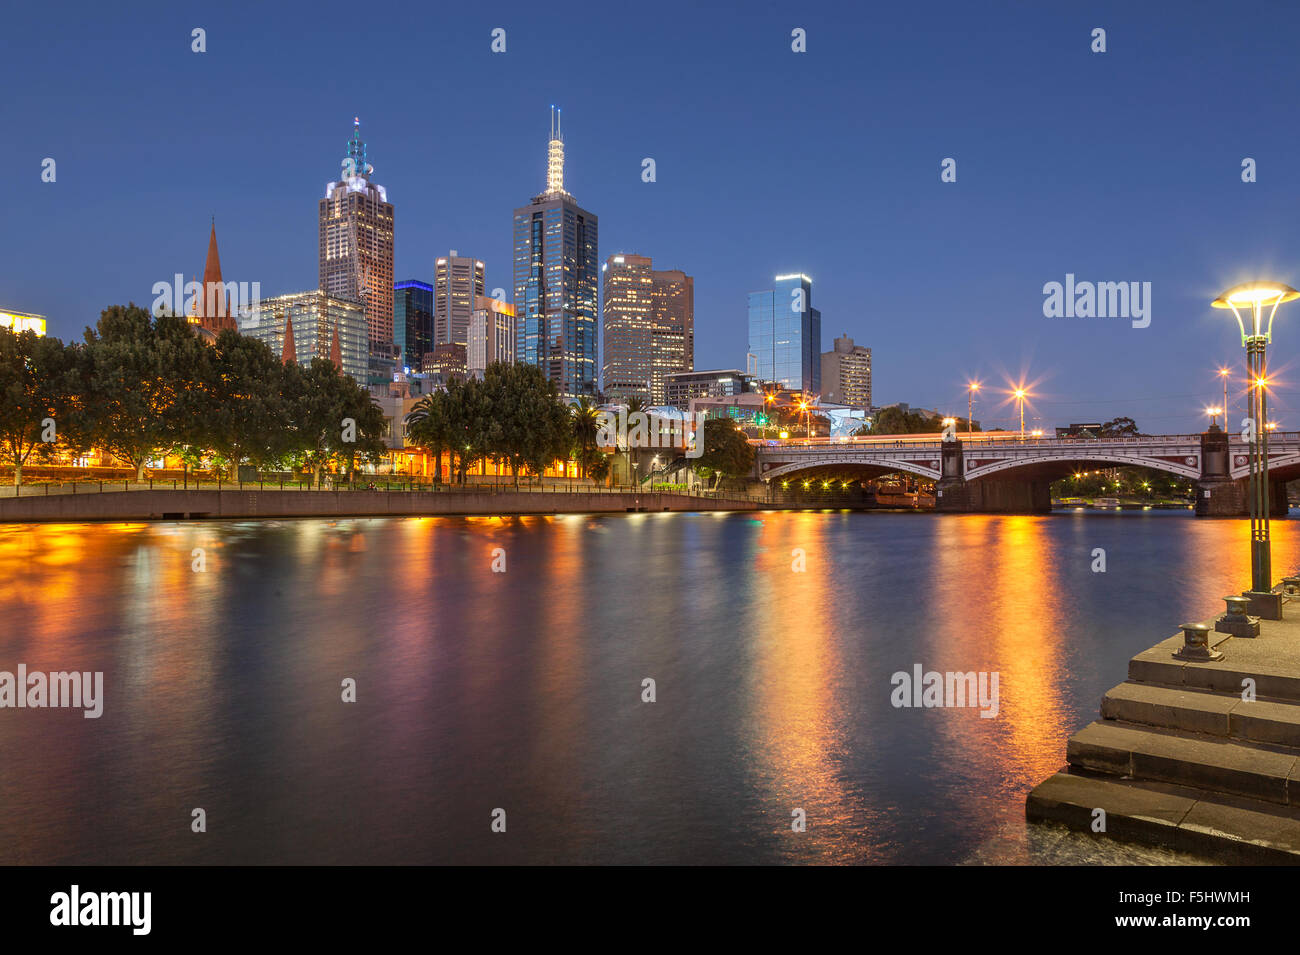 El distrito central de negocios de Melbourne desde el otro lado del río Yarra Foto de stock